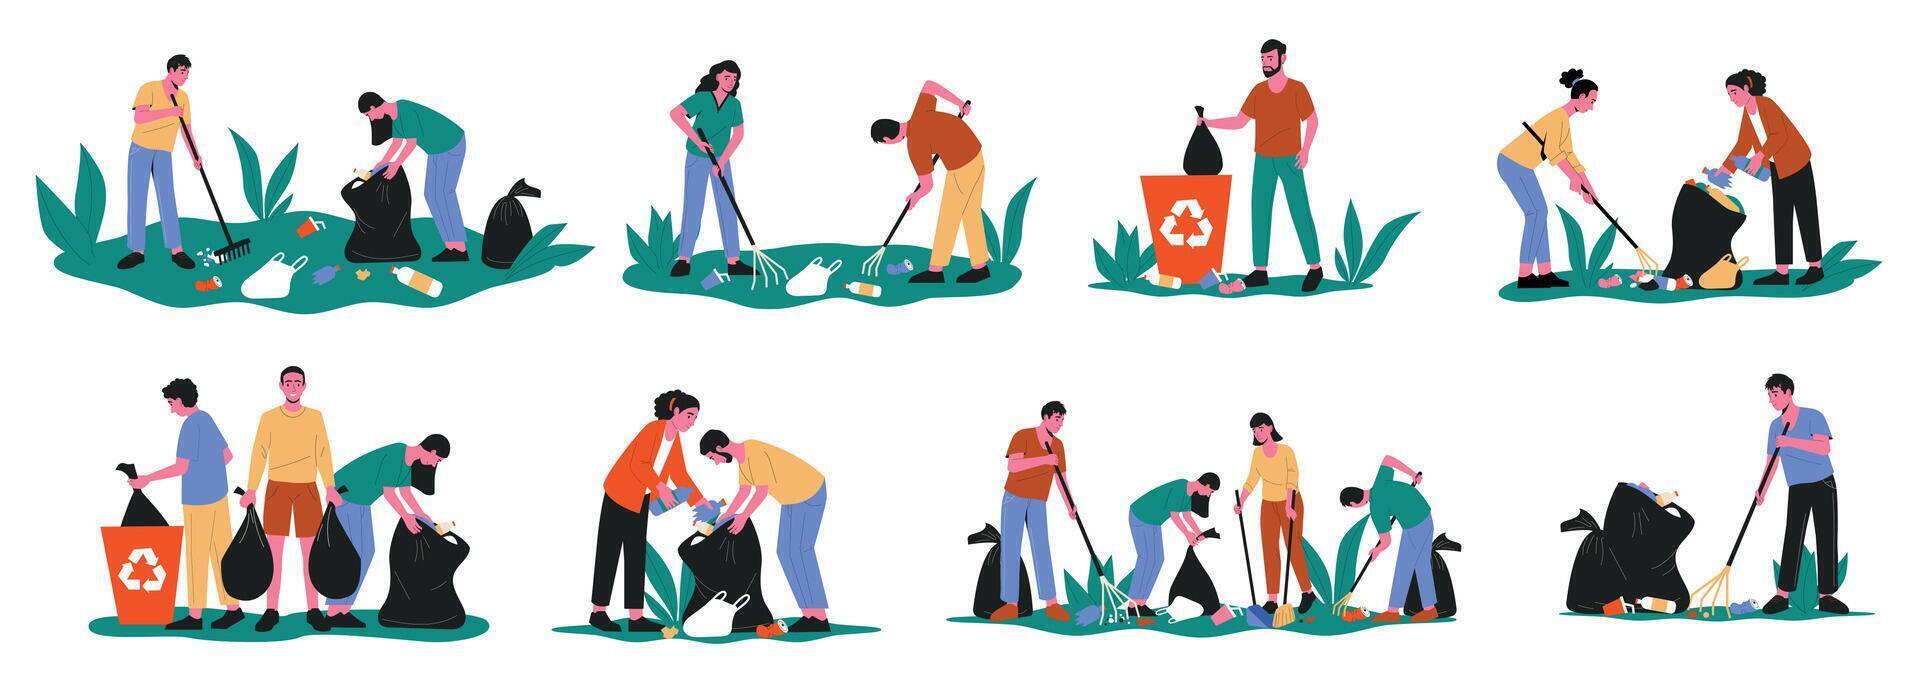 Menschen Sammeln Müll. Karikatur Freiwillige Zeichen Reinigung oben pflücken oben Wurf Müll, Sozial humanitär Hilfe Konzept. Vektor isoliert einstellen